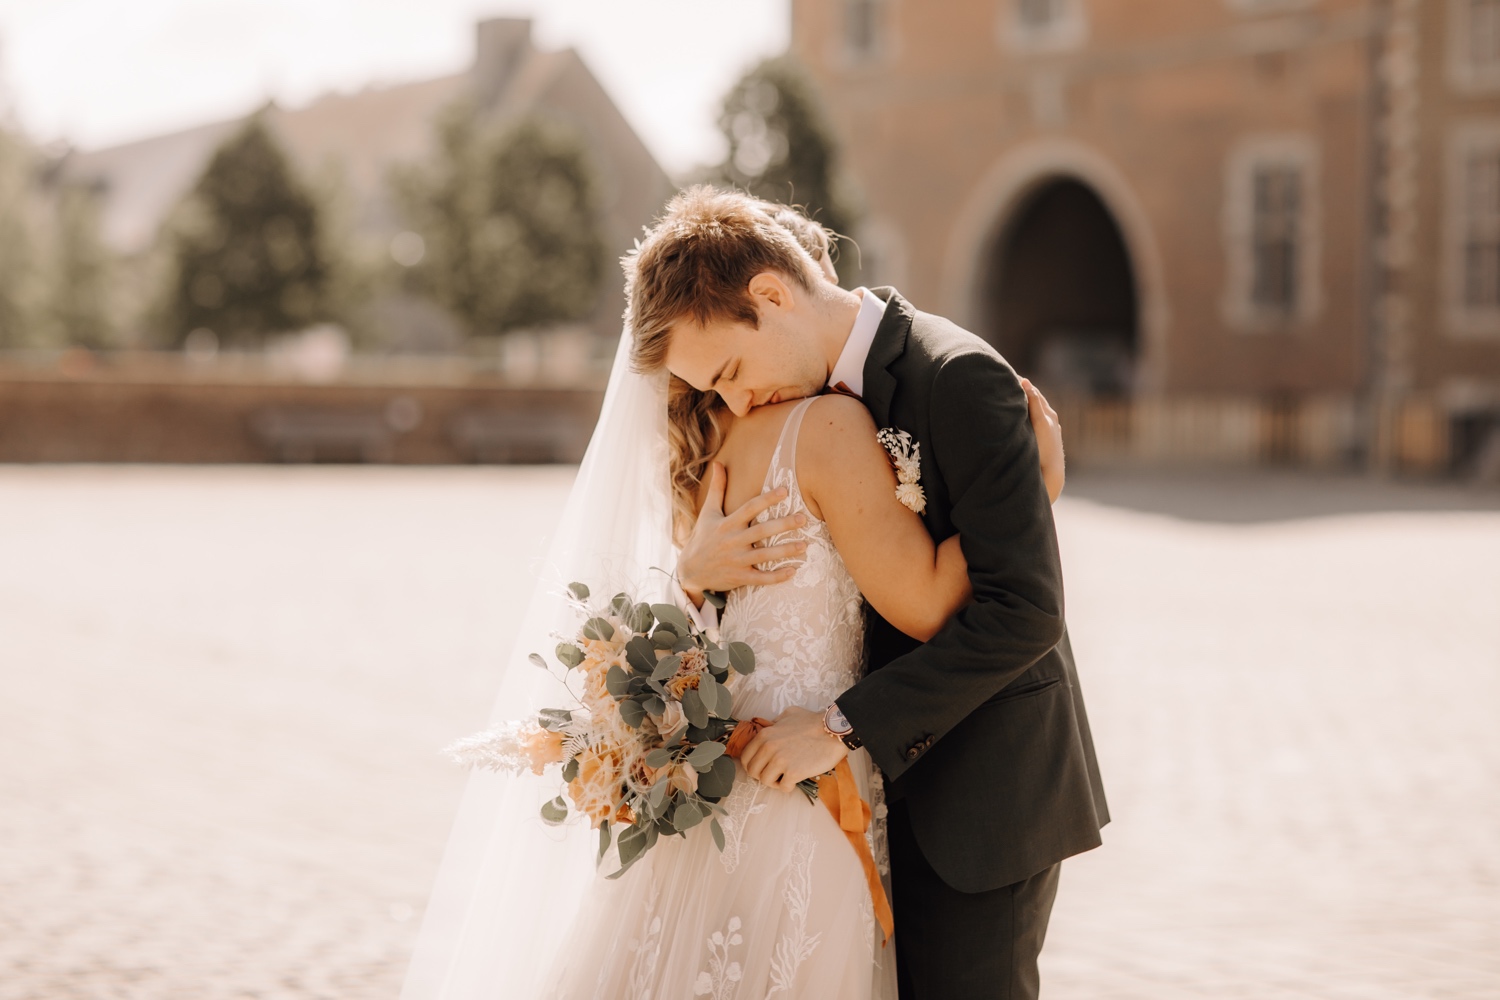 Huwelijksfotograaf Limburg - bruidspaar omhelst elkaar tijdens first look